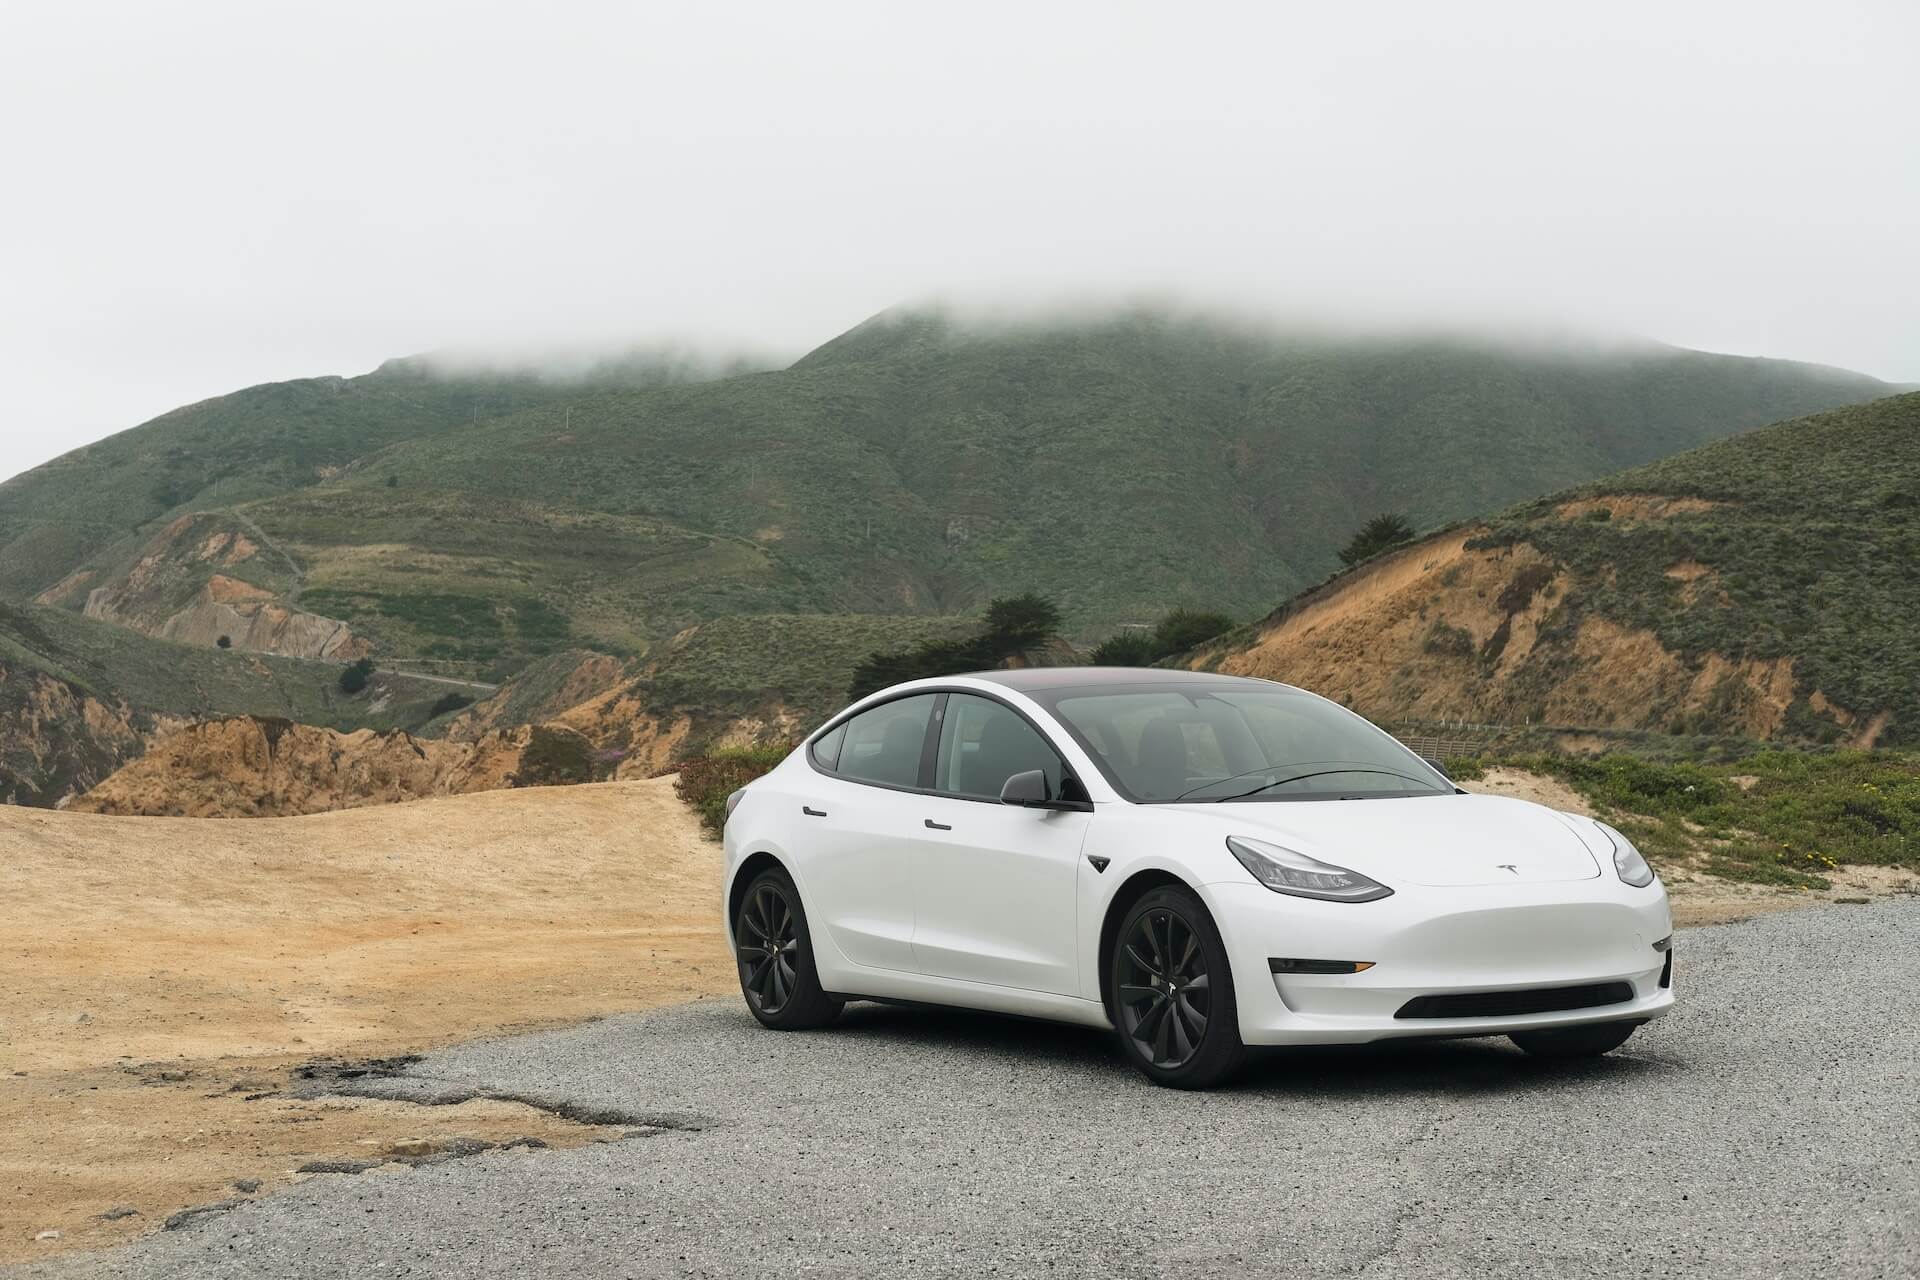 White Tesla car, parked